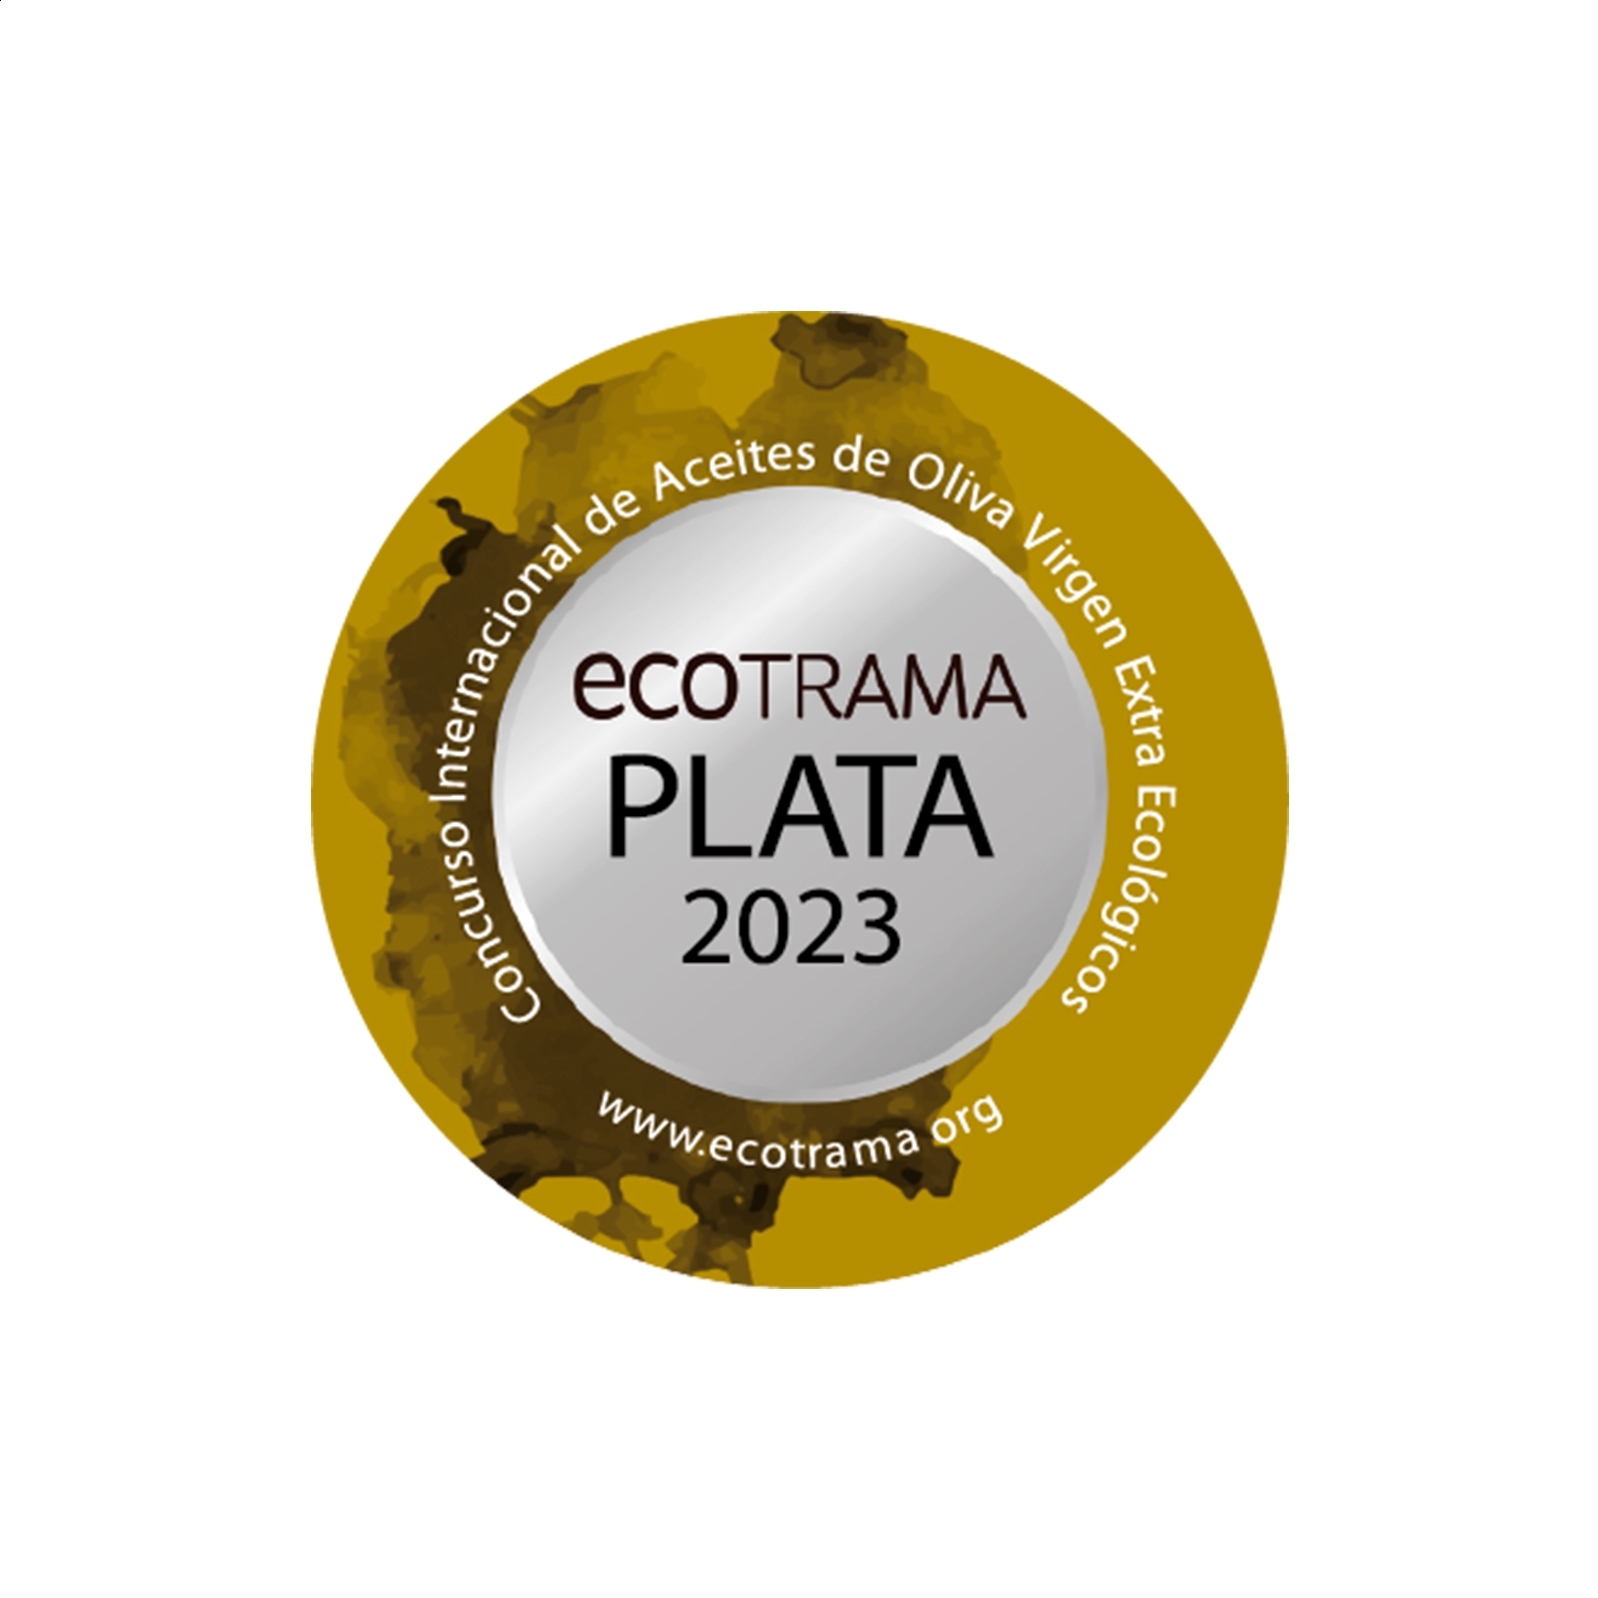 Oro La Senda Almazara - AOVE selección ecológico (etiqueta personalizada) D.O.P. Aceite Campo de Montiel 100ml, 60uds